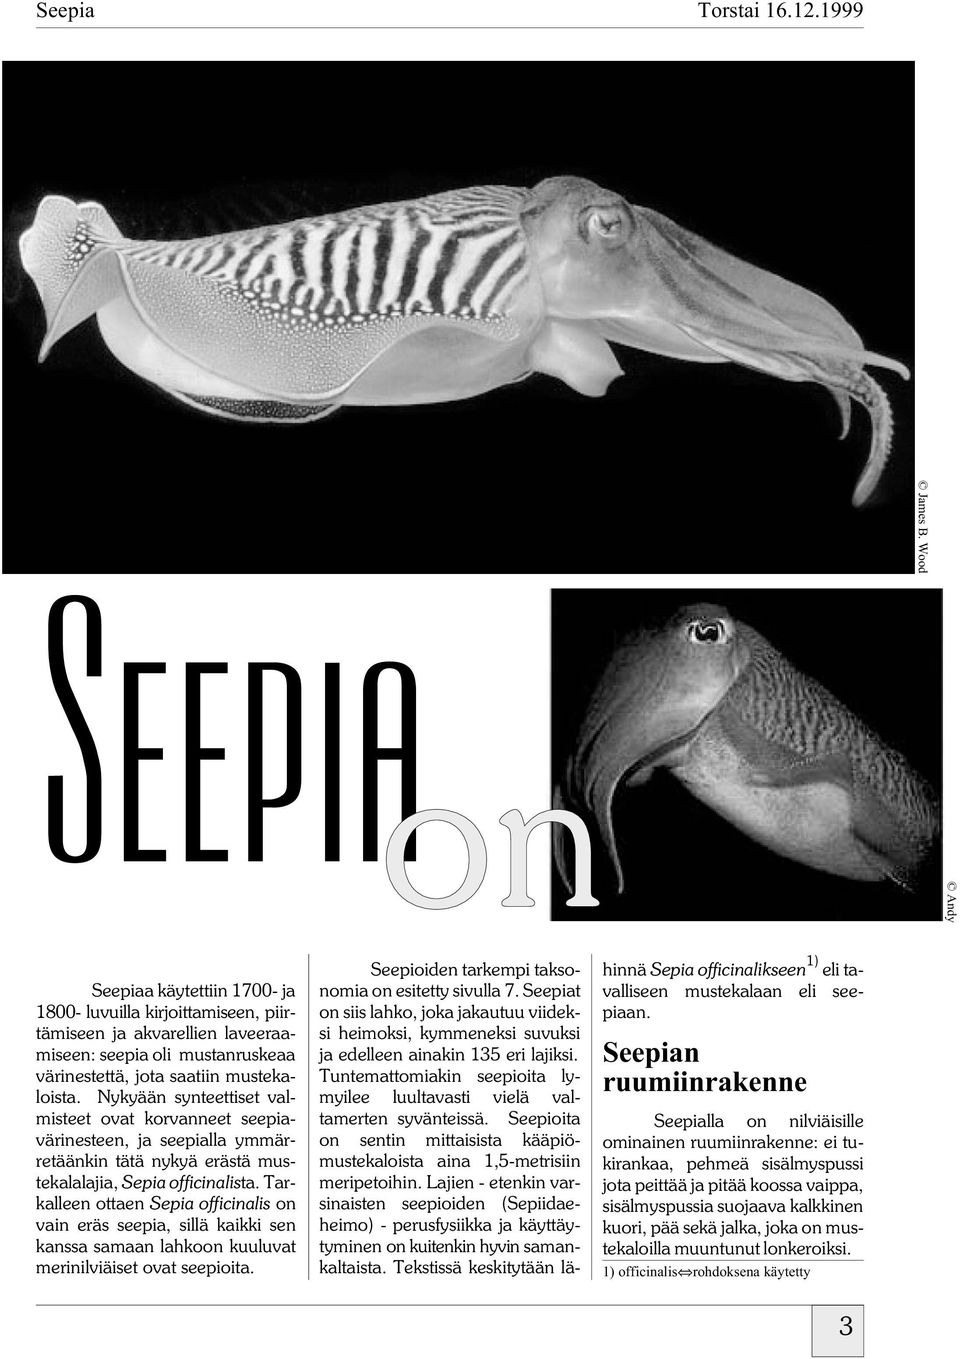 Tarkalleen ottaen Sepia officinalis on vain eräs seepia, sillä kaikki sen kanssa samaan lahkoon kuuluvat merinilviäiset ovat seepioita. Seepioiden tarkempi taksonomia on esitetty sivulla 7.